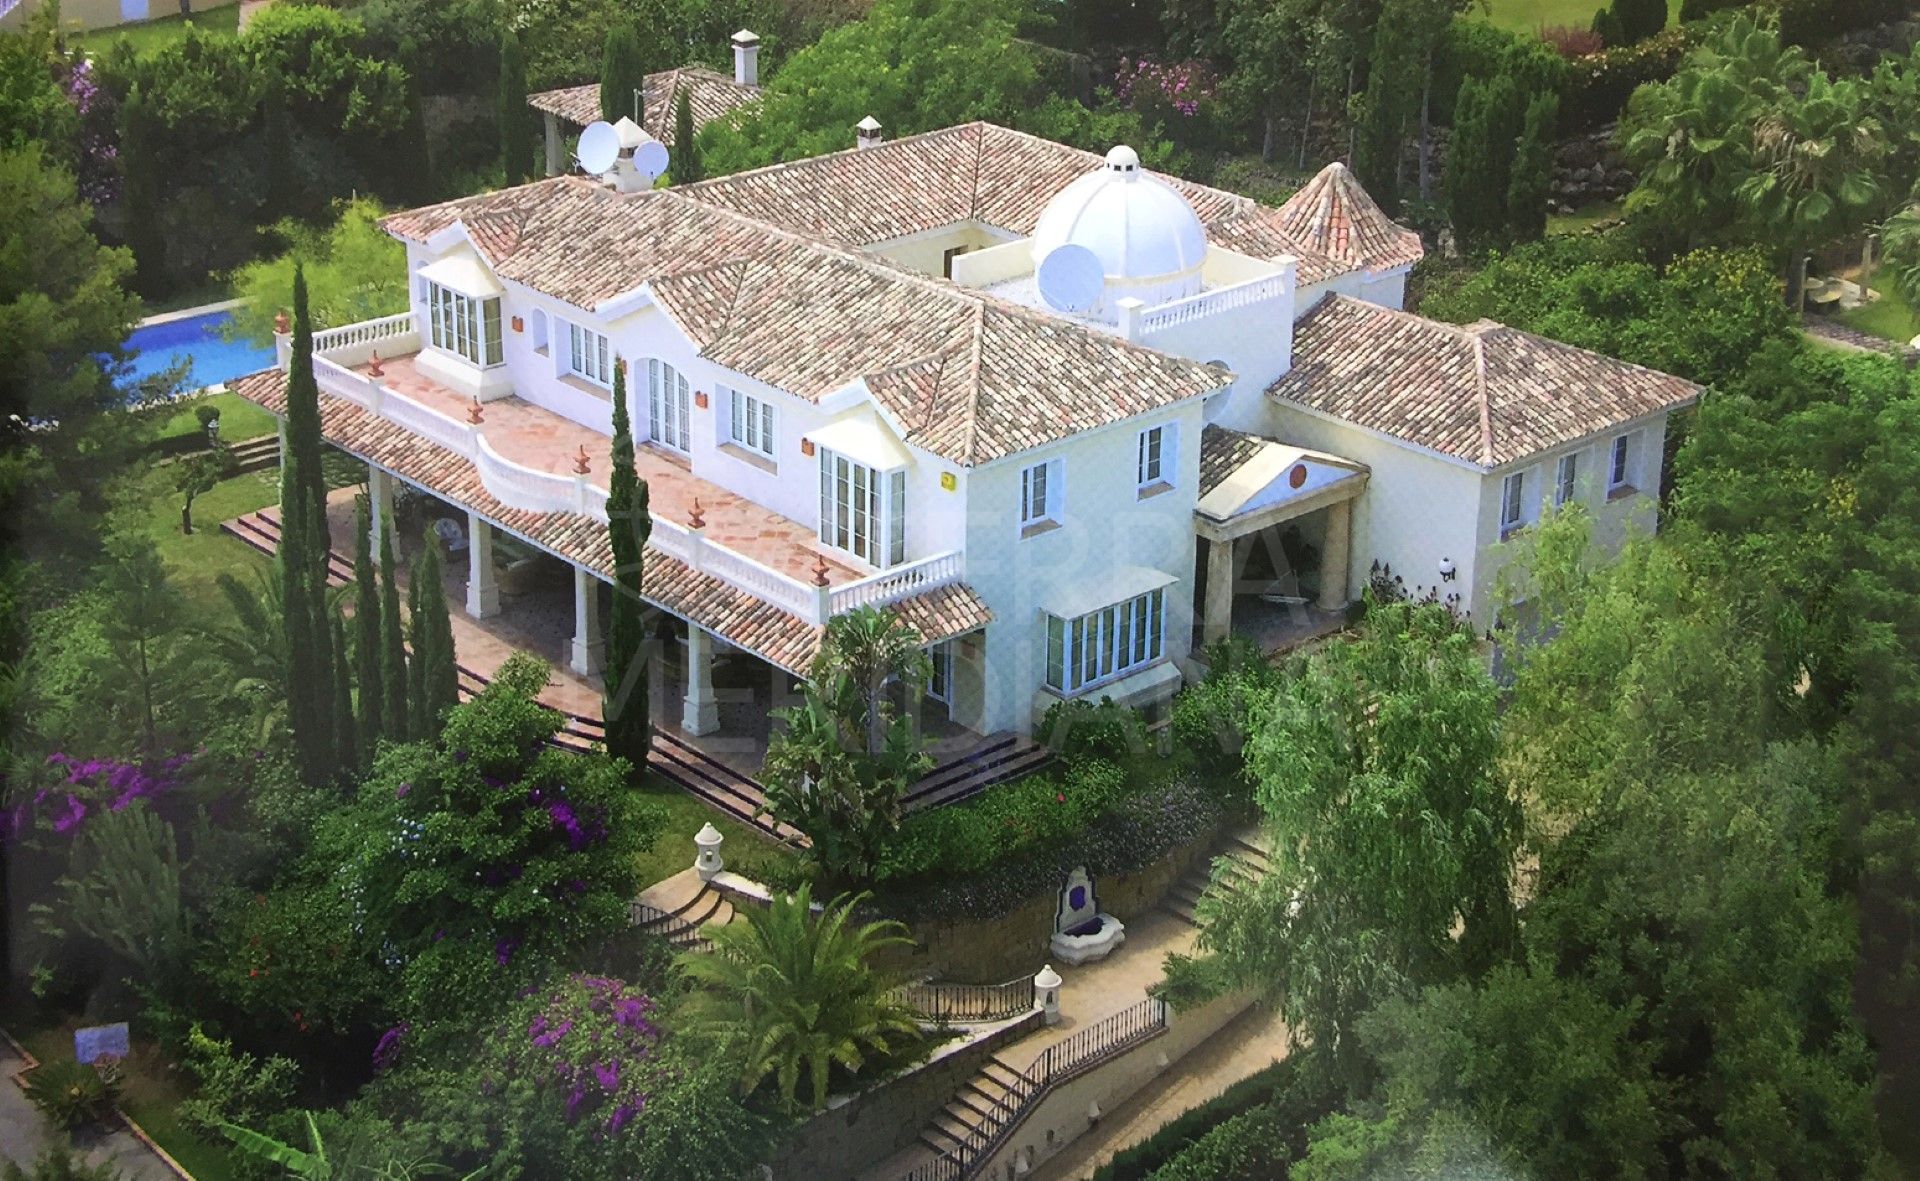 Villa elegante y lujosa en Sierra Blanca con vistas al mar en Marbella